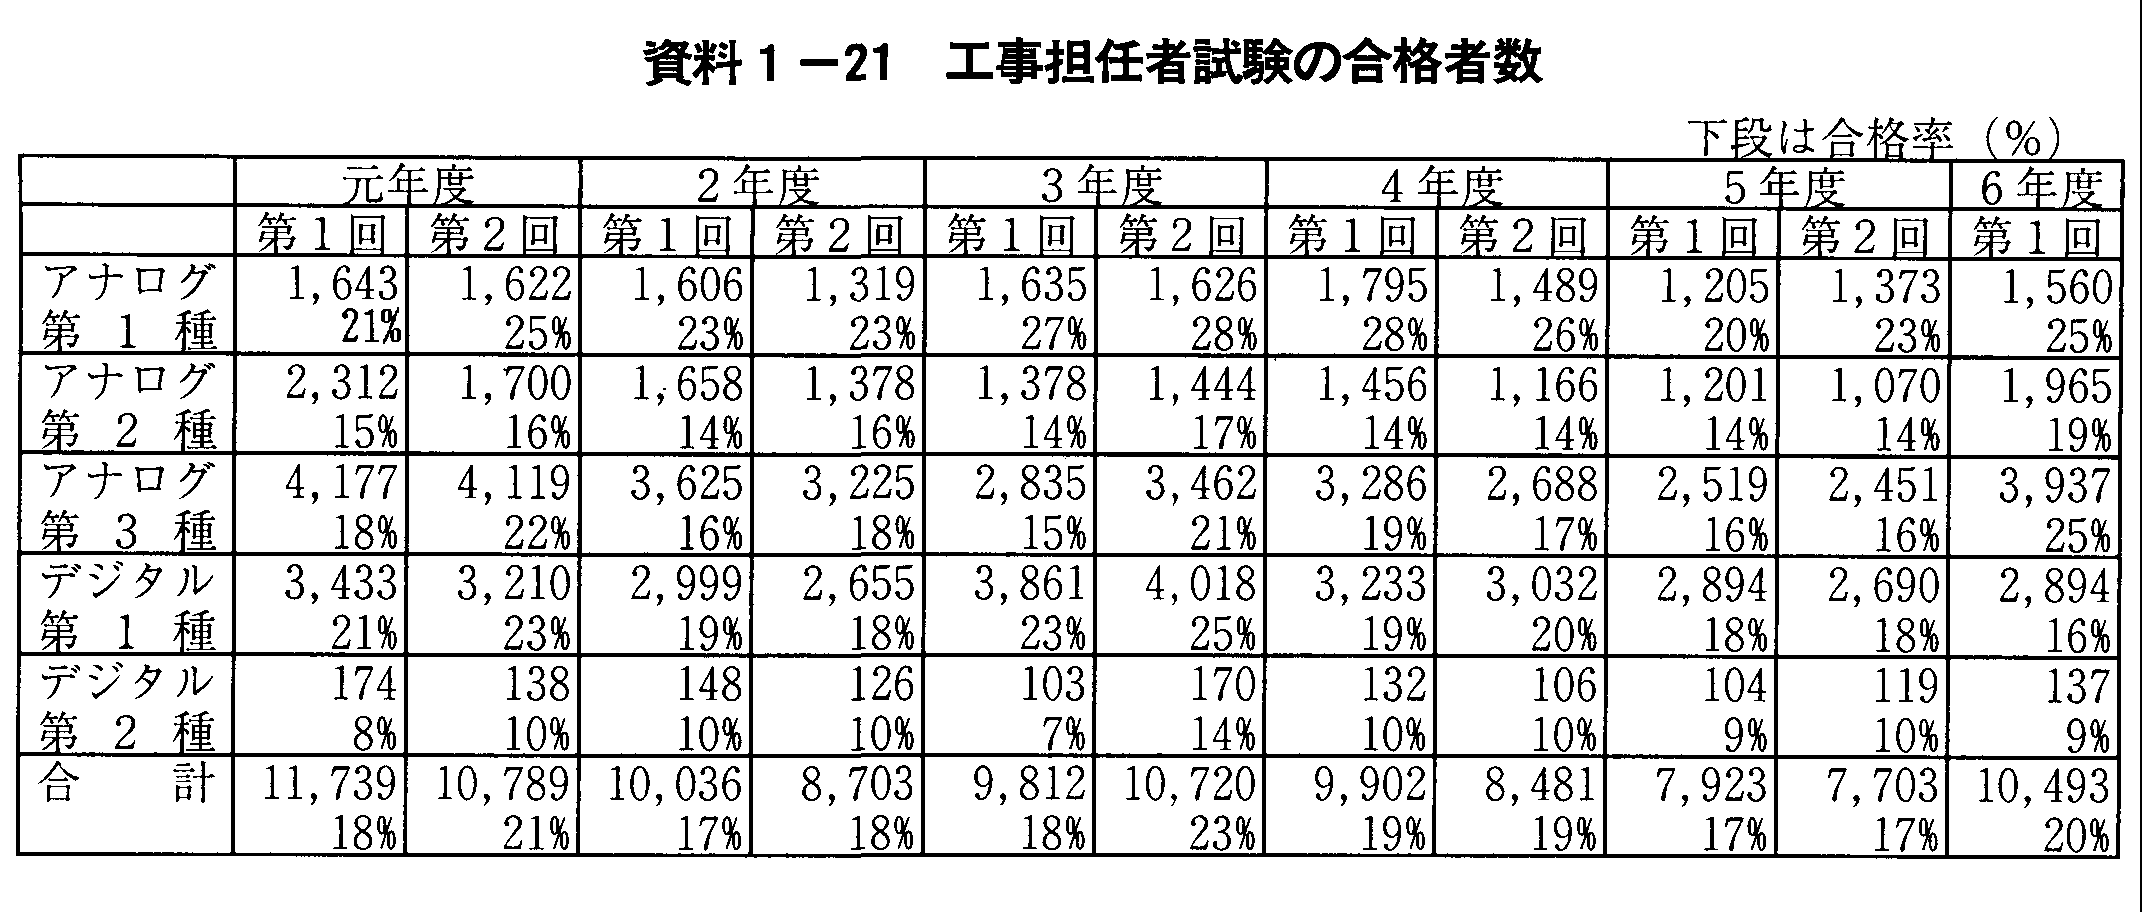 資料1-21 工事担任者試験の合格者数